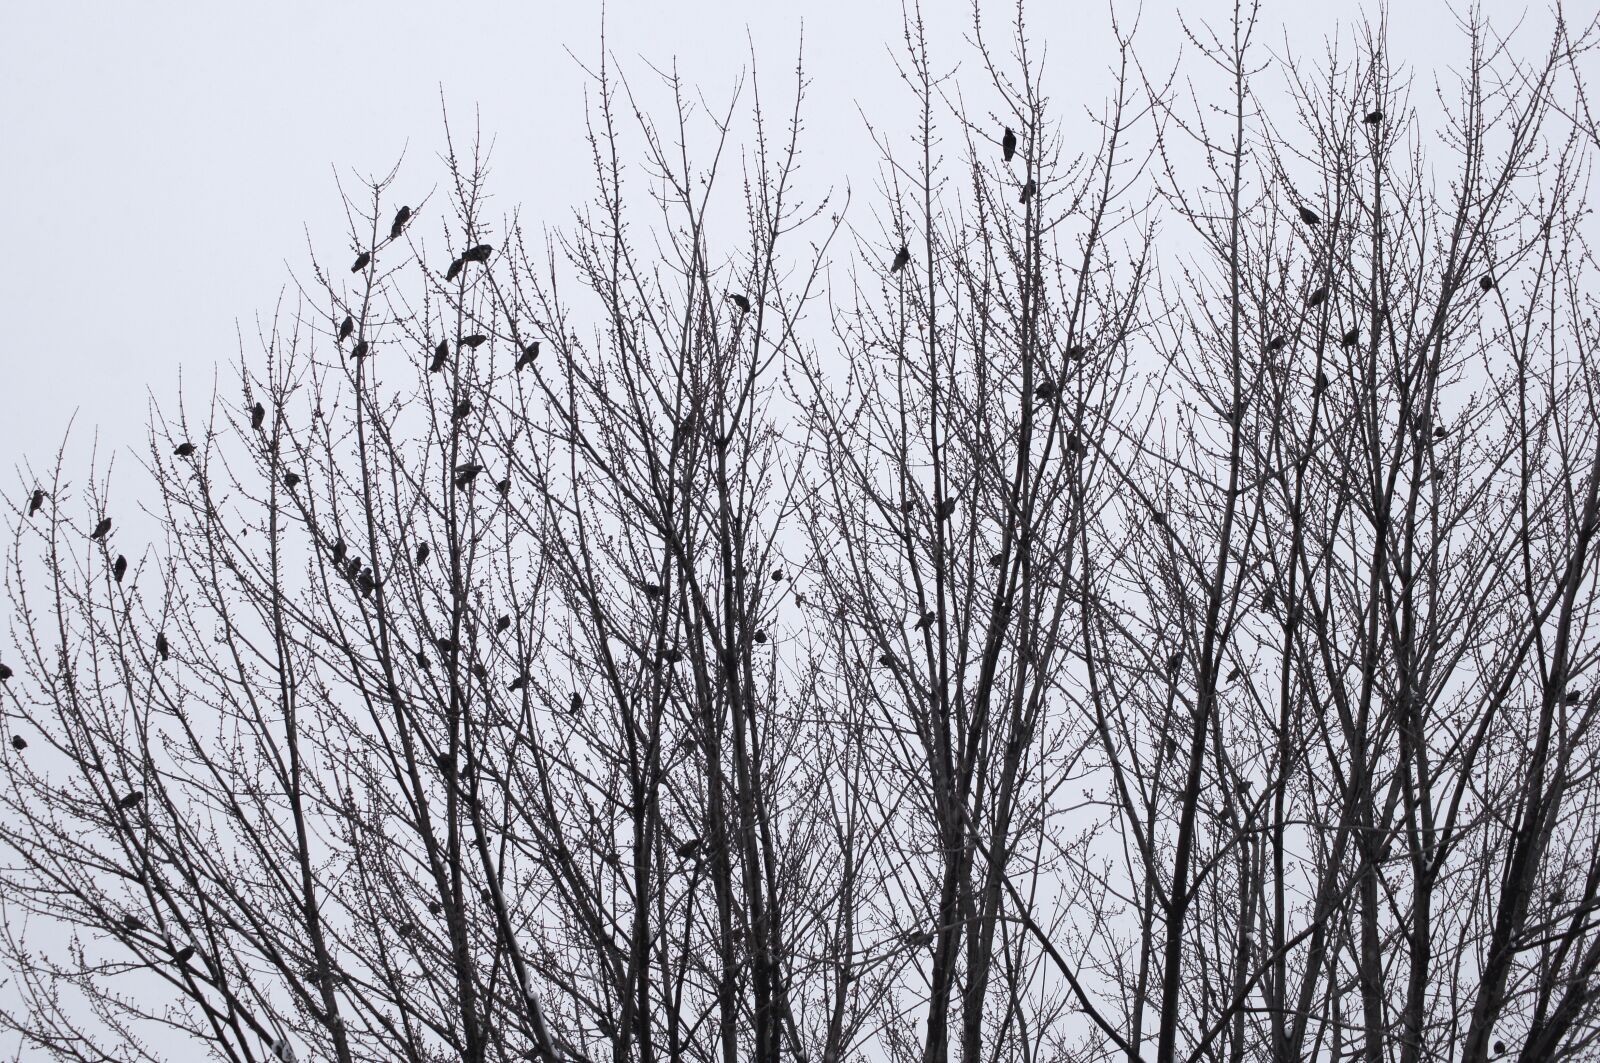 Sony SLT-A35 sample photo. Birds, winter, landscape photography